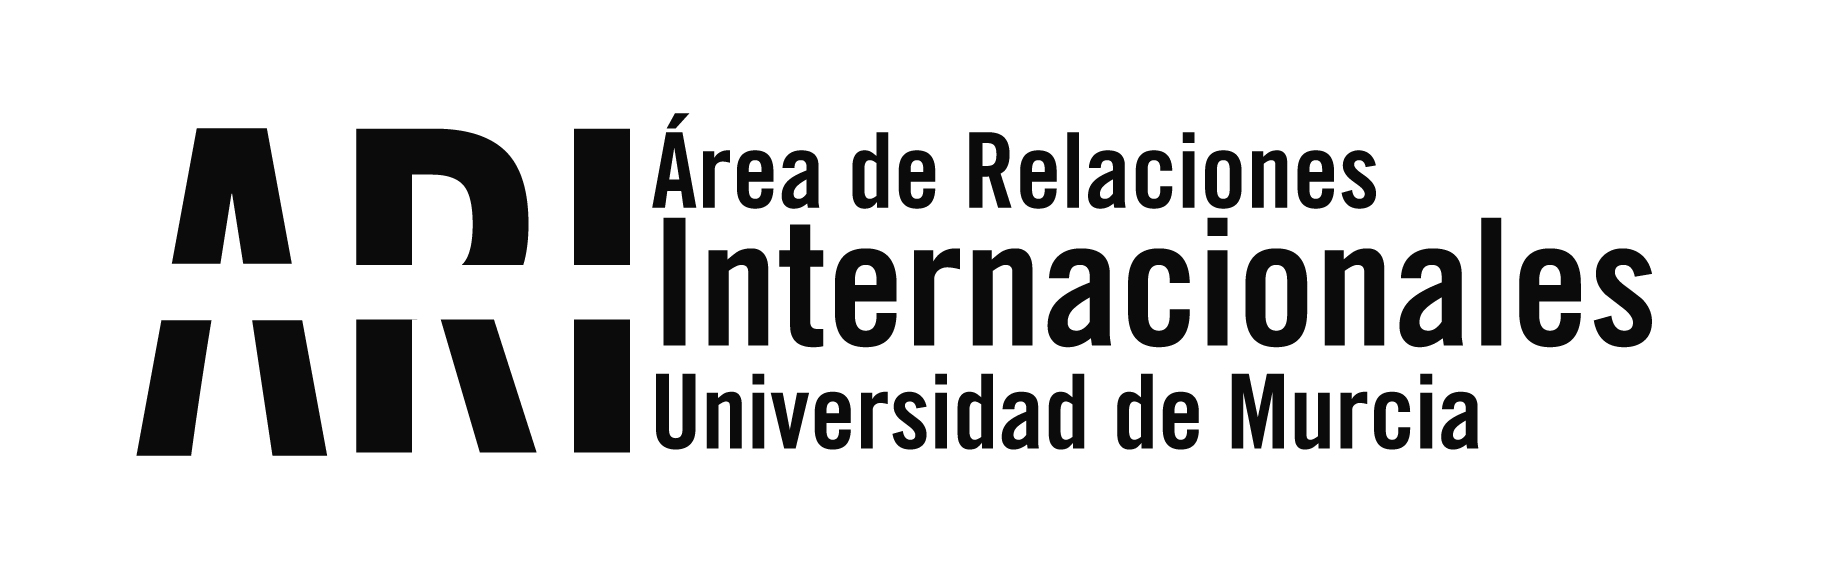 220926 Reunión Universidad de Buenos Aires - Visitas Institucionales - Área de Relaciones Internacionales